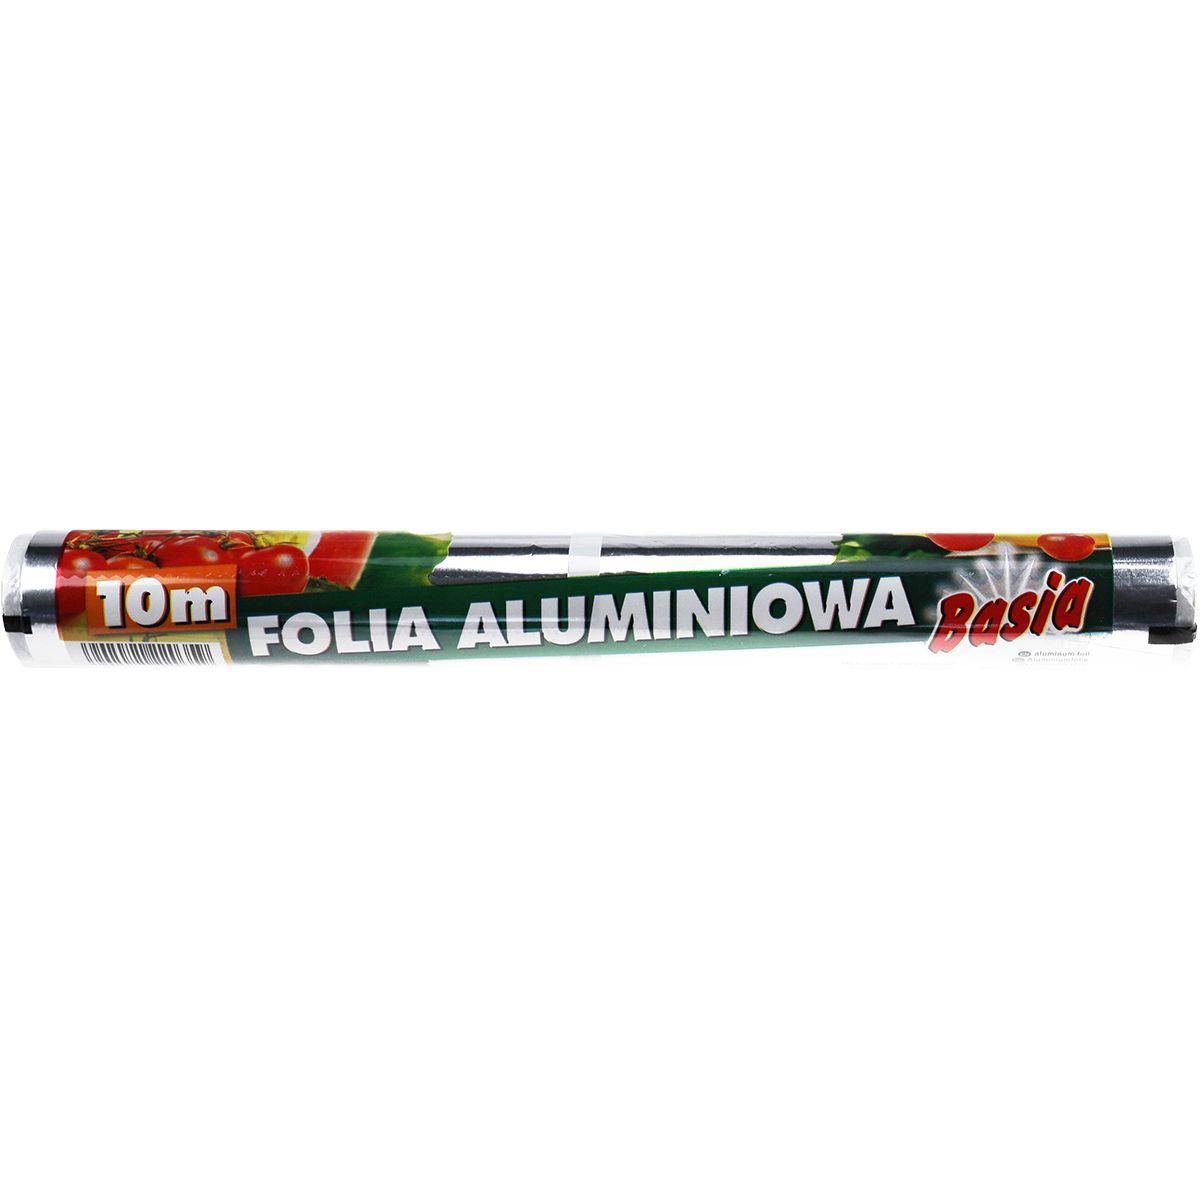 Folia aluminiowa 10m